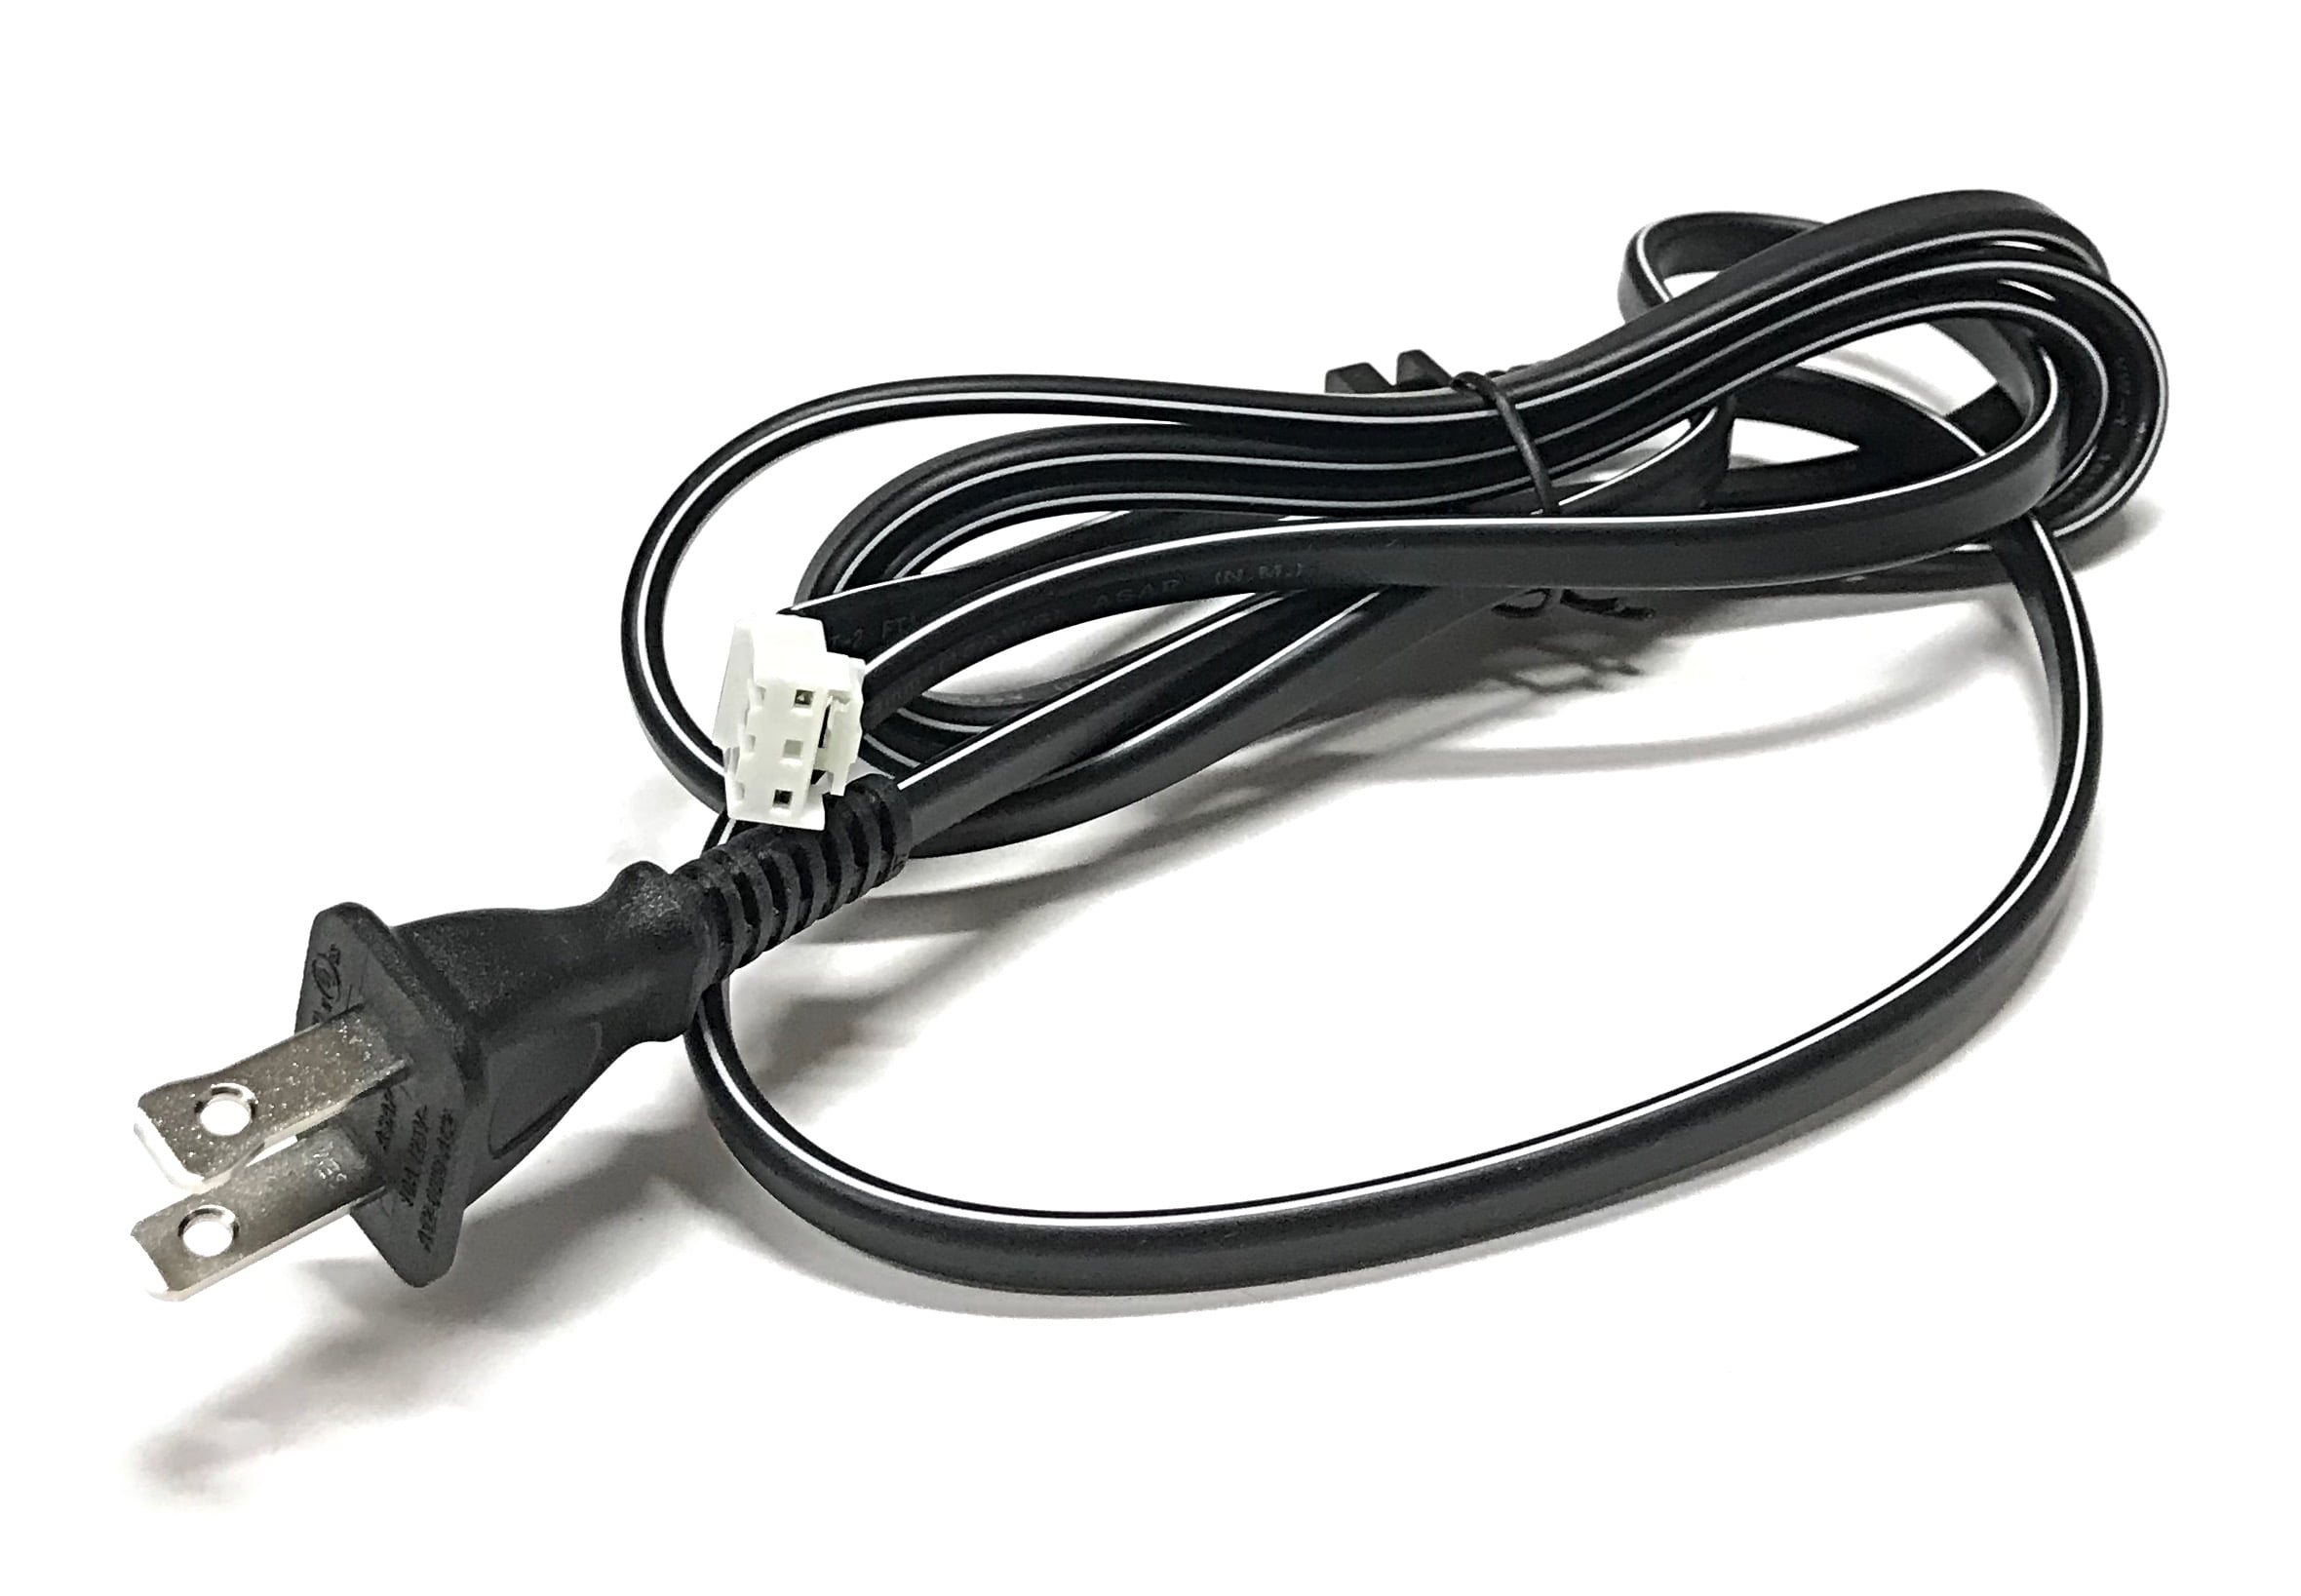 PKPOWER 6ft Power Cord for Philips TV 42PFL7432D/37 42TA648BX/37 42PFL7422D/37 